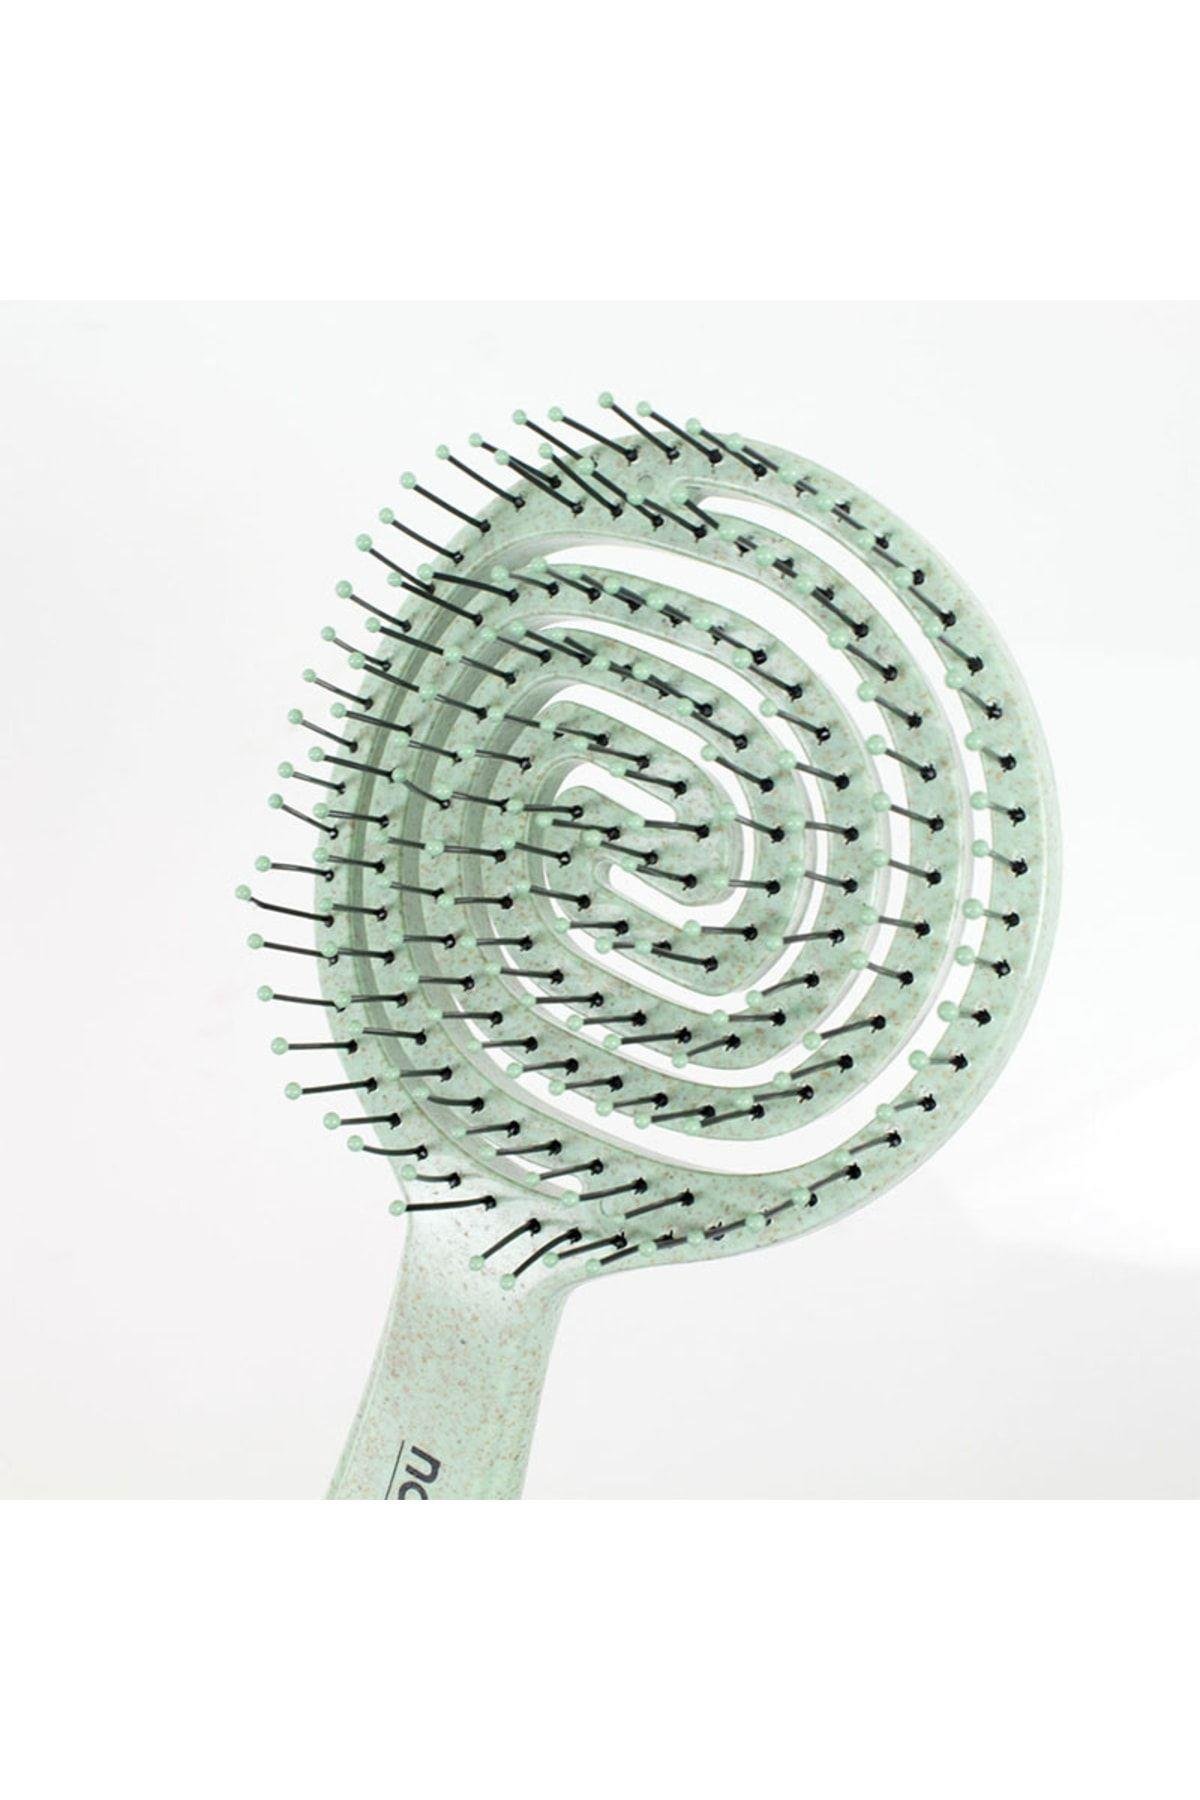 Nascita Geri Dönüşümlü Saç Fırçası Pro2G Yeşil - Farmaucuz